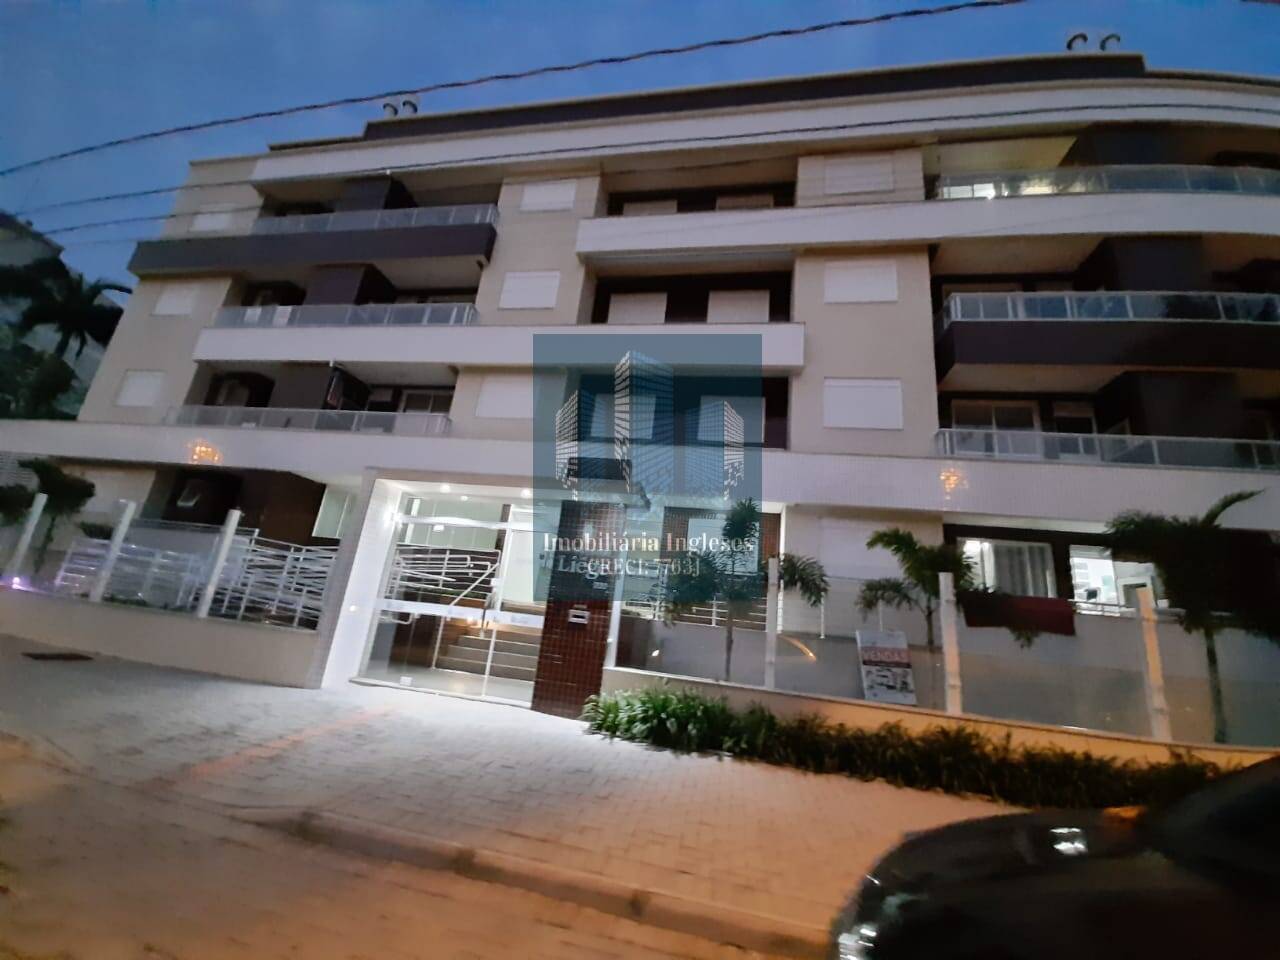 Apartamento a venda em Canasvieiras - Florianop�lis SC